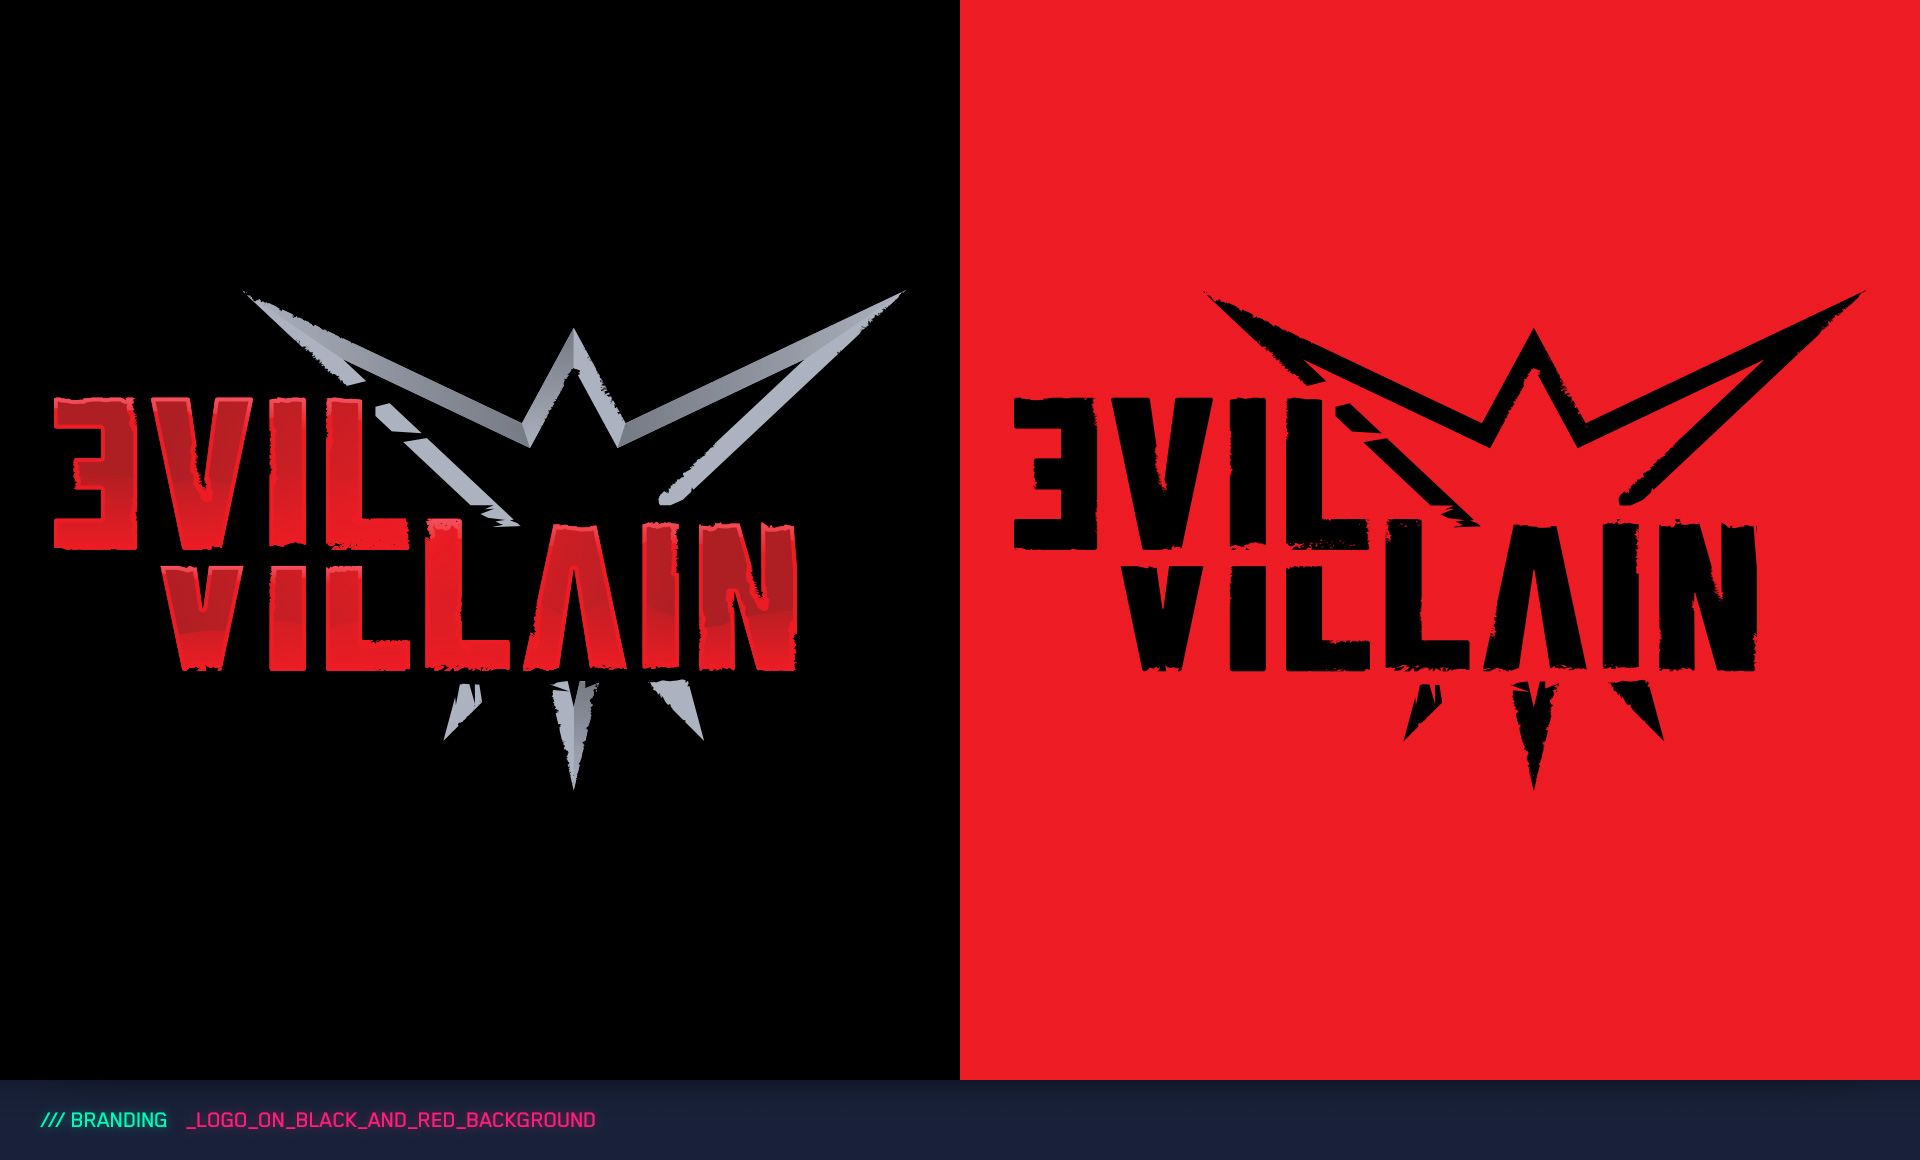 Dark Phantom - Villain Logo Series by Mo Hashim on Dribbble